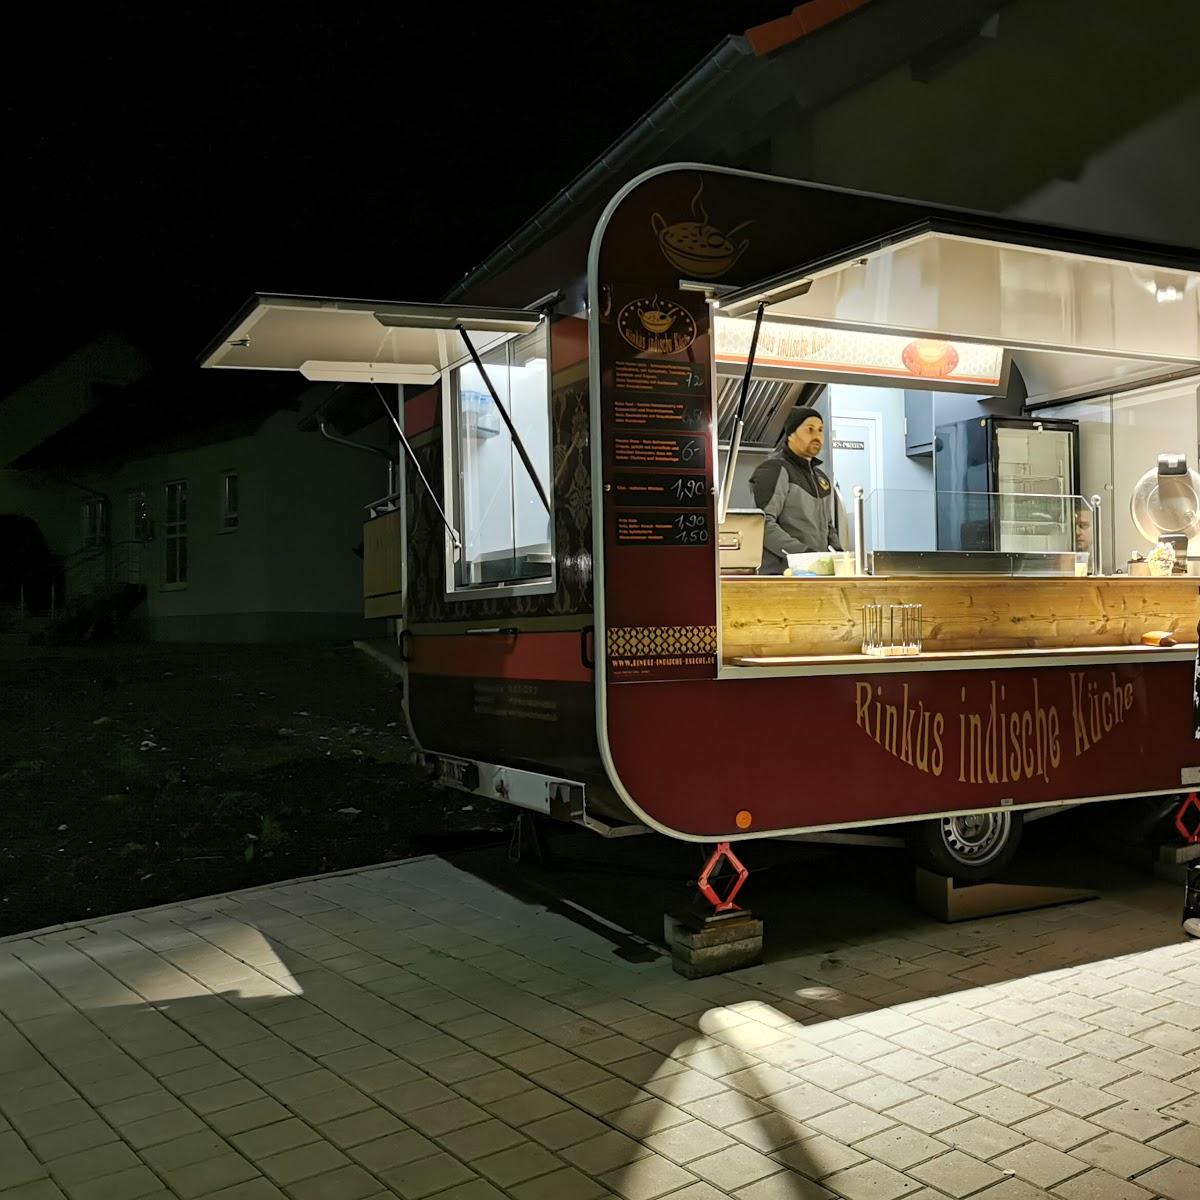 Restaurant "Food Truck: Rinkus Indische Küche" in  Schussenried